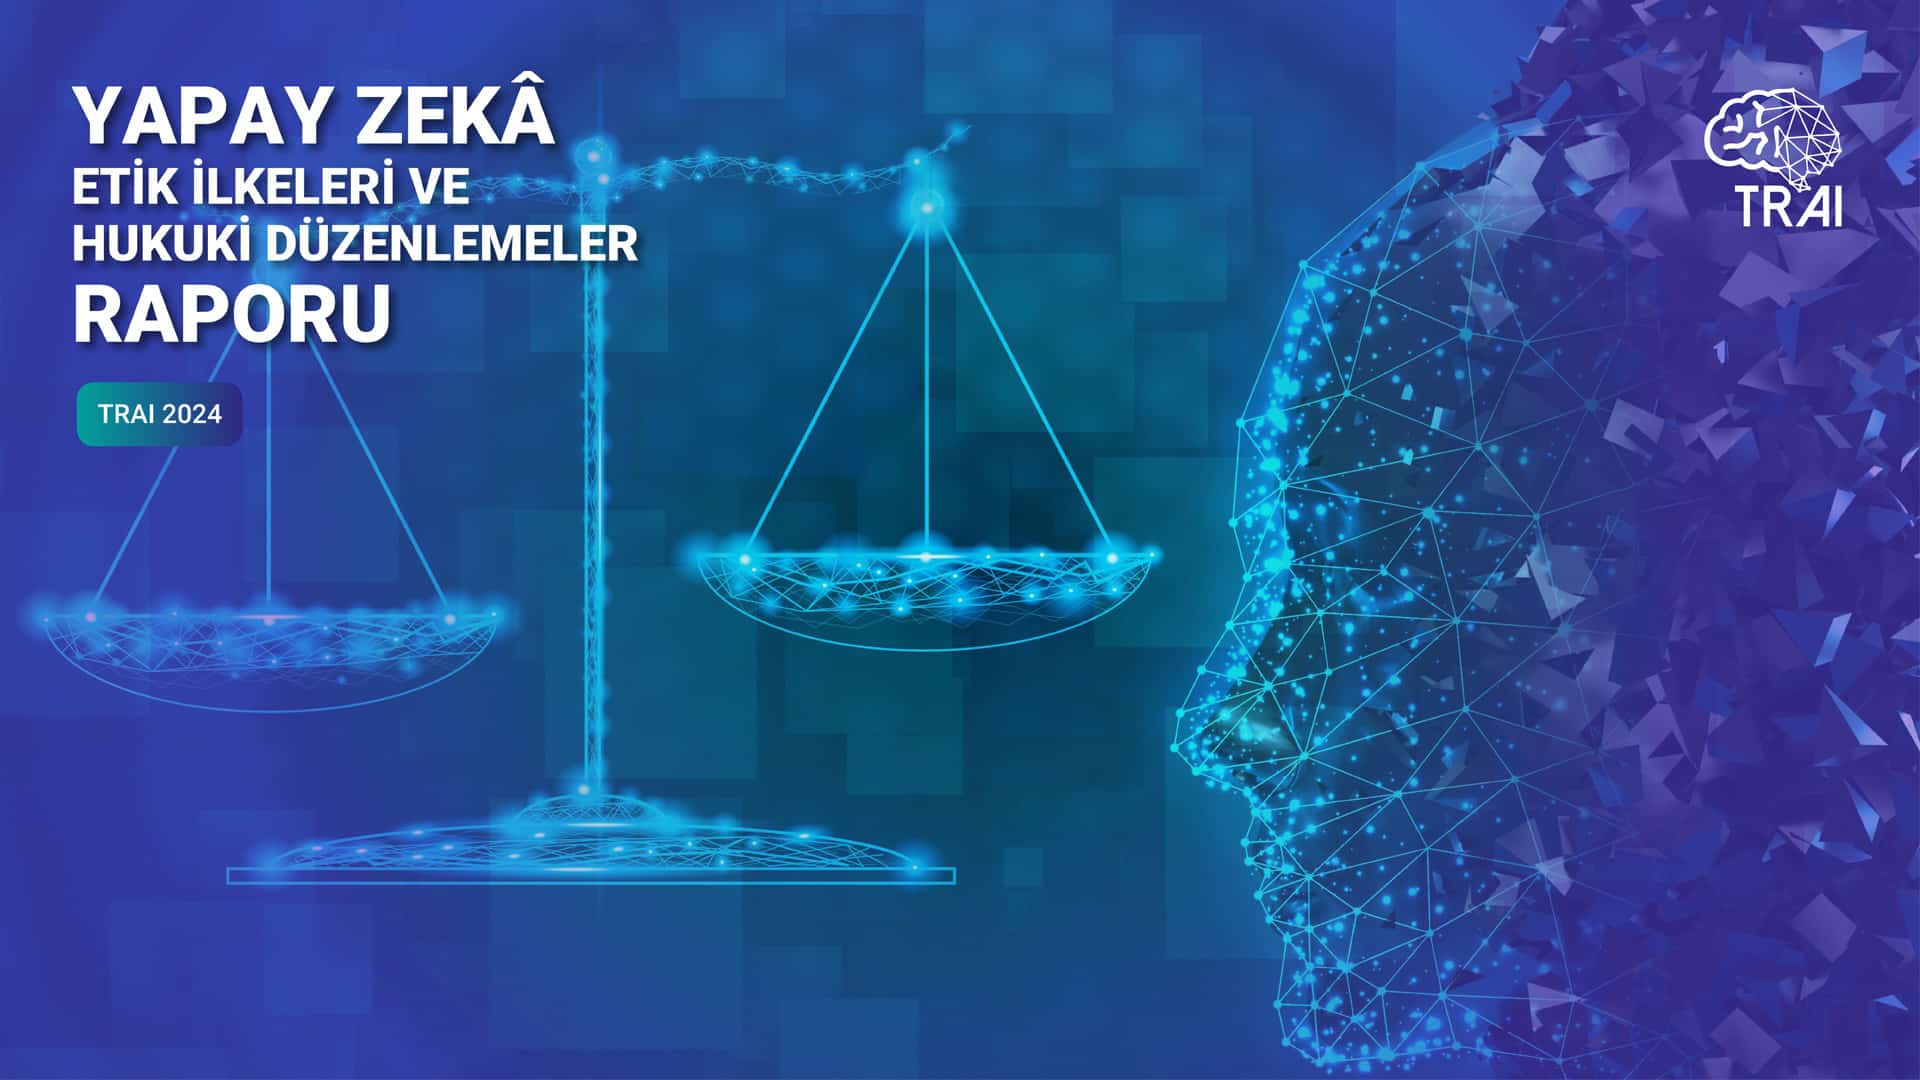 Türkiye Yapay Zeka İnisiyatifi “Yapay Zekâ Etik İlkeleri ve Hukuki Düzenlemeler Raporu”nu yayınladı